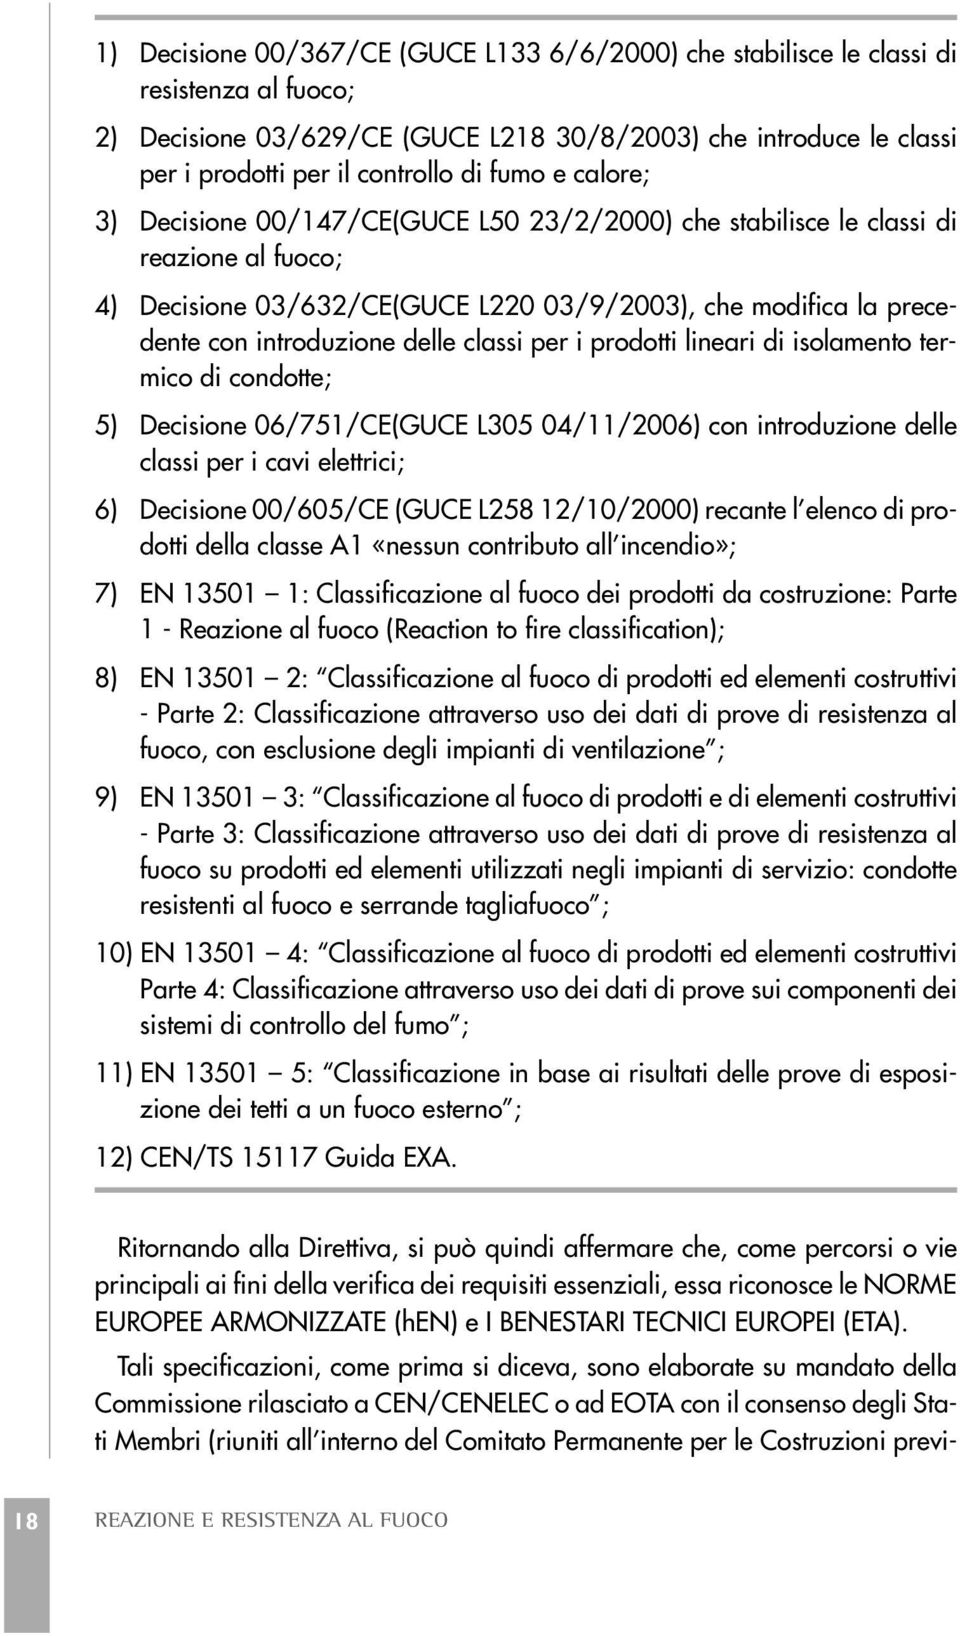 classi per i prodotti lineari di isolamento termico di condotte; 5) Decisione 06/751/CE(GUCE L305 04/11/2006) con introduzione delle classi per i cavi elettrici; 6) Decisione 00/605/CE (GUCE L258